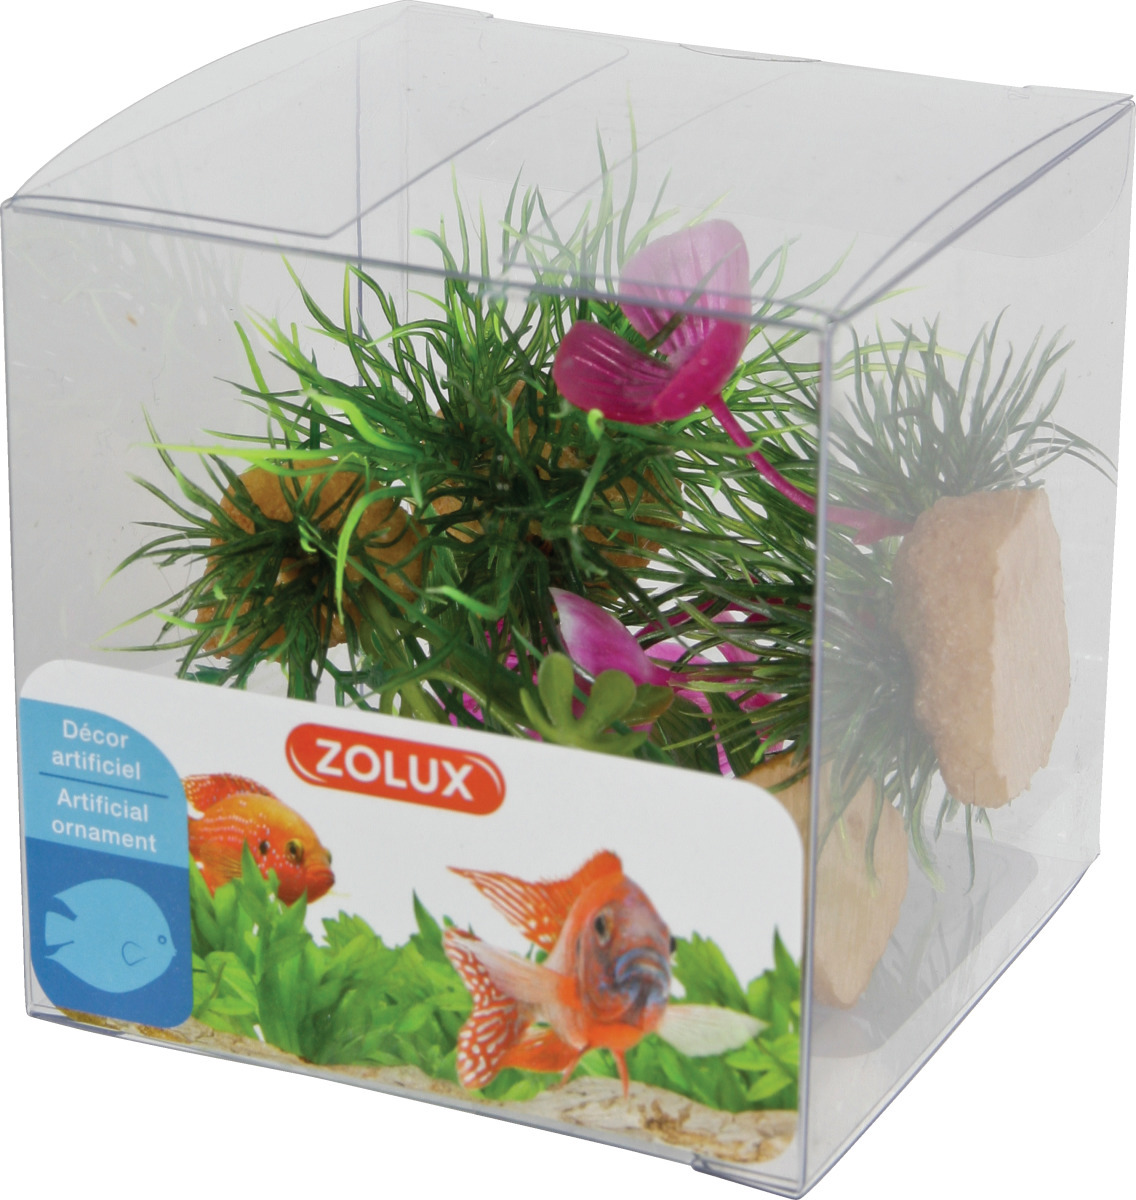 ZOLUX Boîte Mix 1 - Lot de 4 petites plantes artificielles 4 à 10 cm pour aquarium